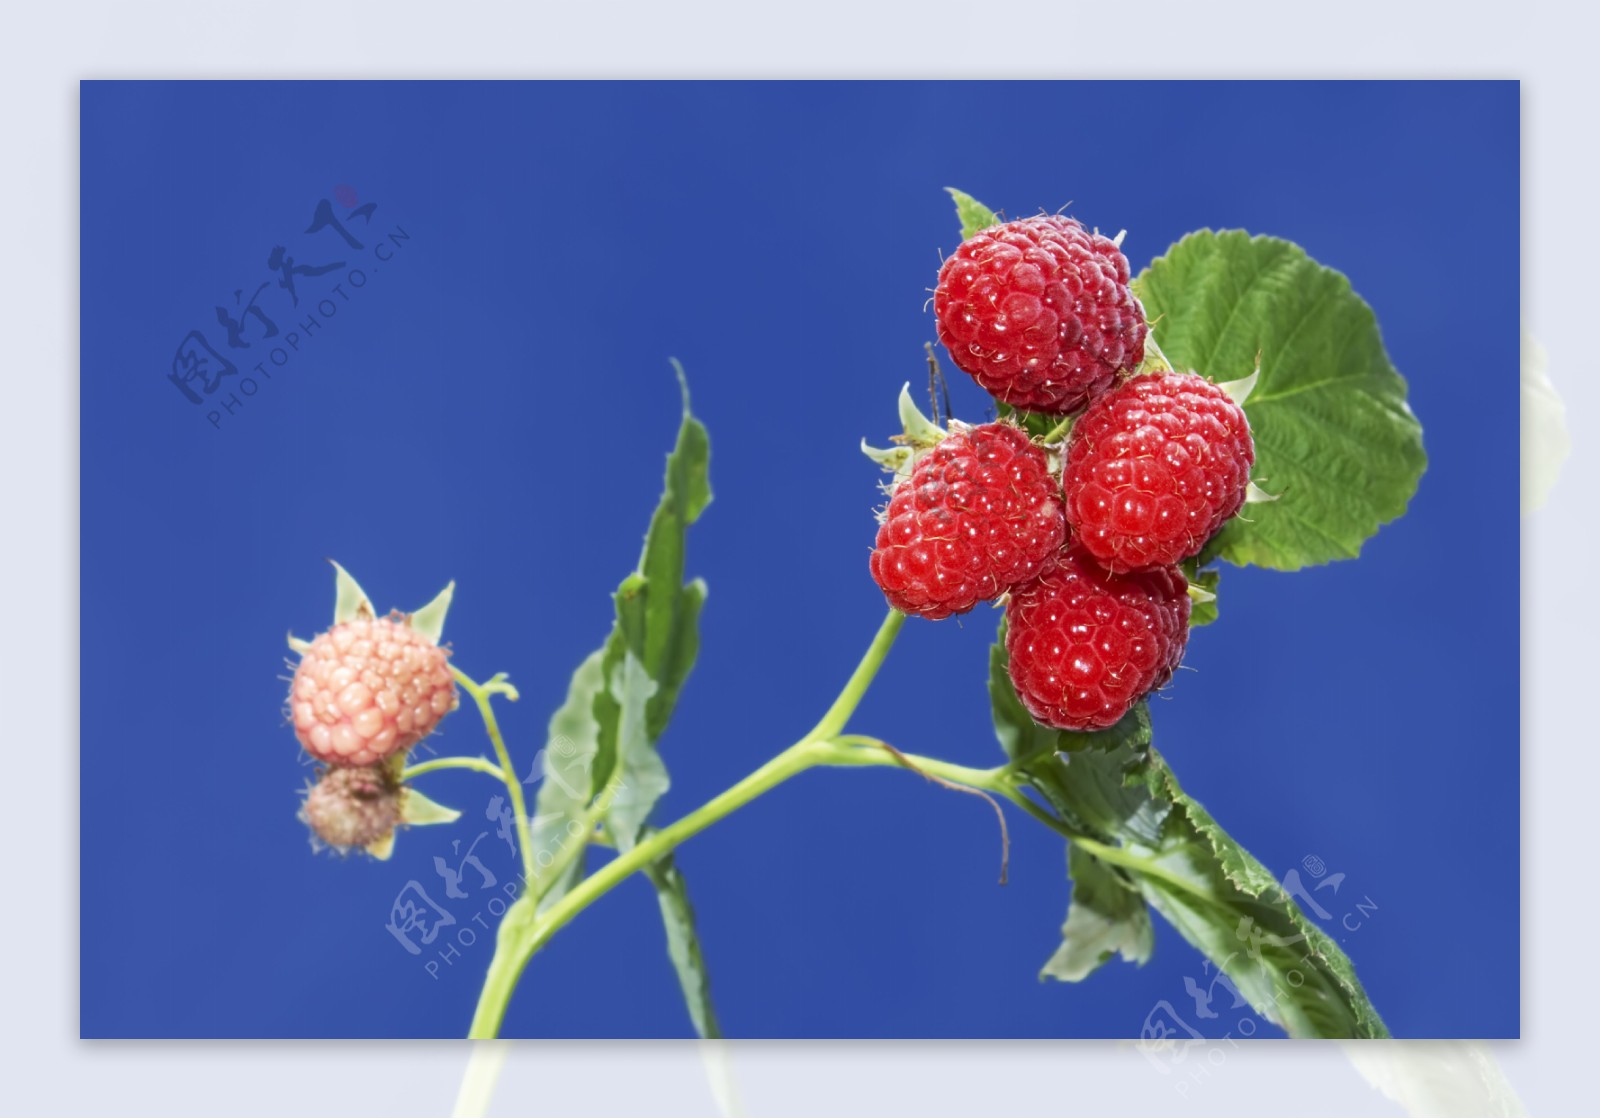 树莓高清图片